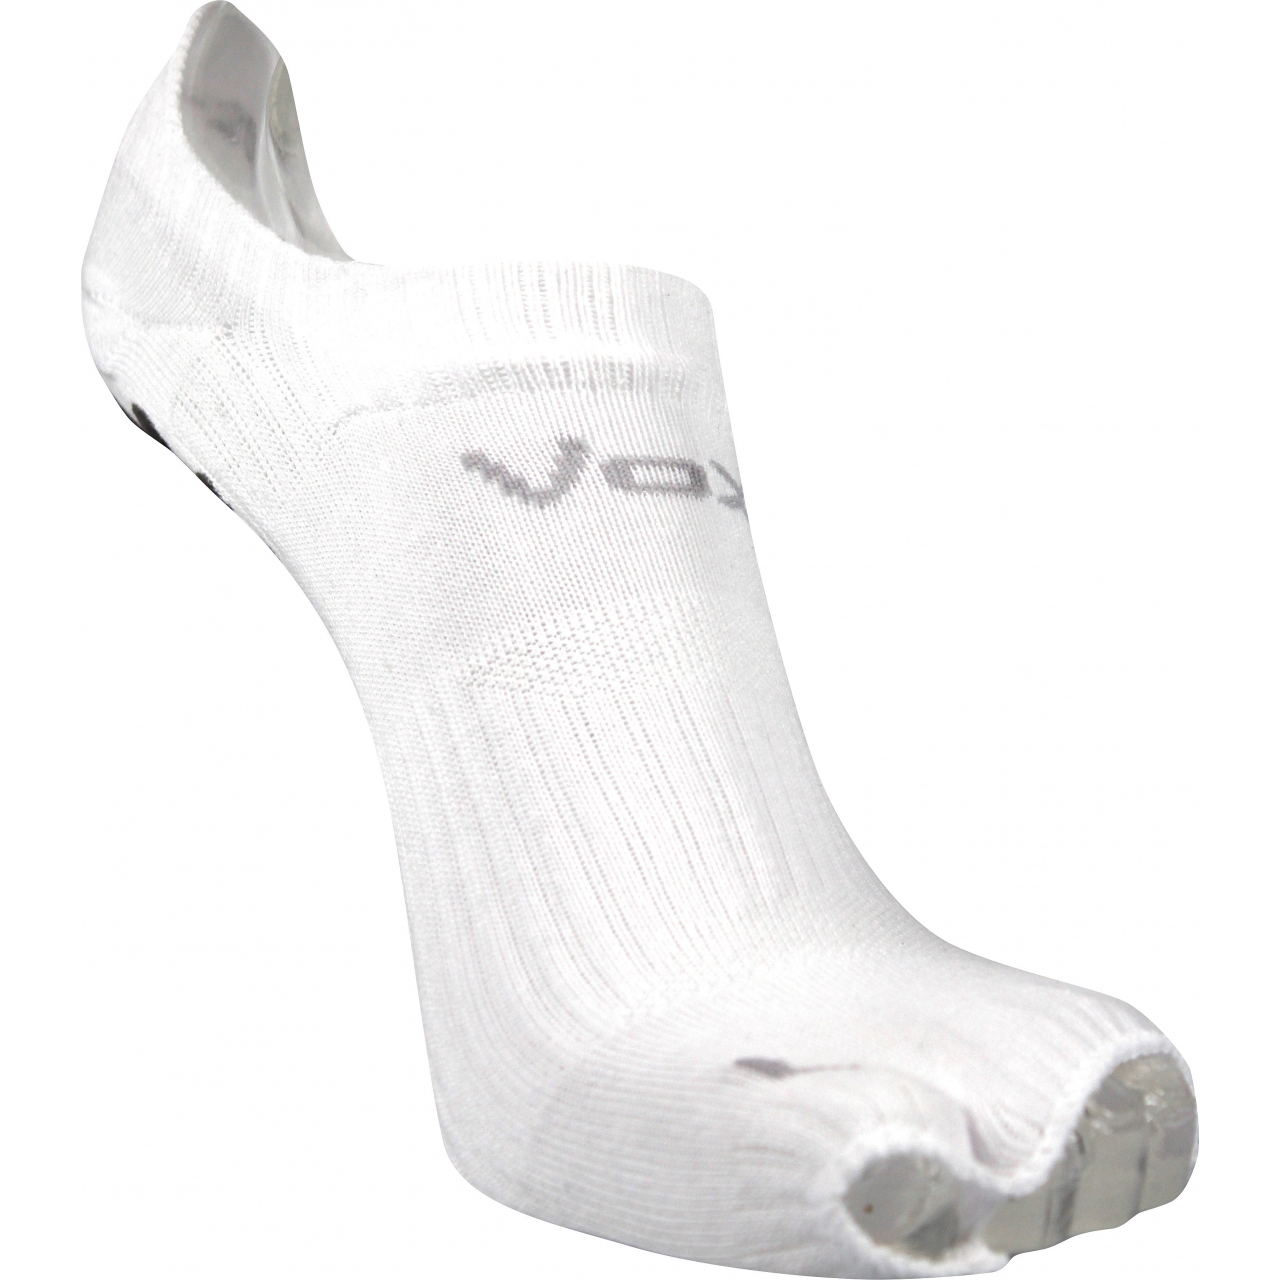 Ponožky sportovní unisex Voxx Joga B - bílé, 35-38